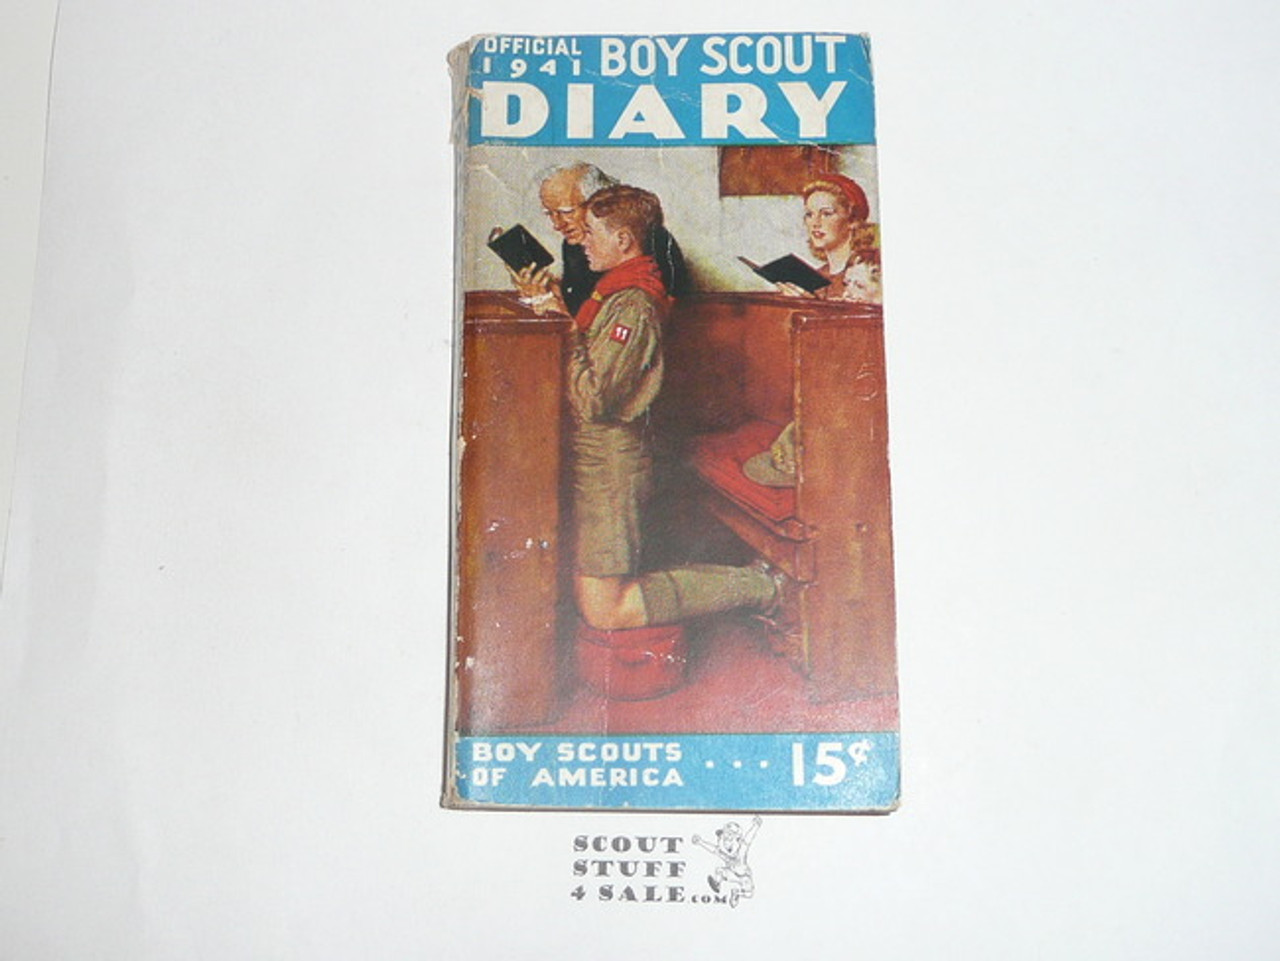 1941 Boy Scout Diary